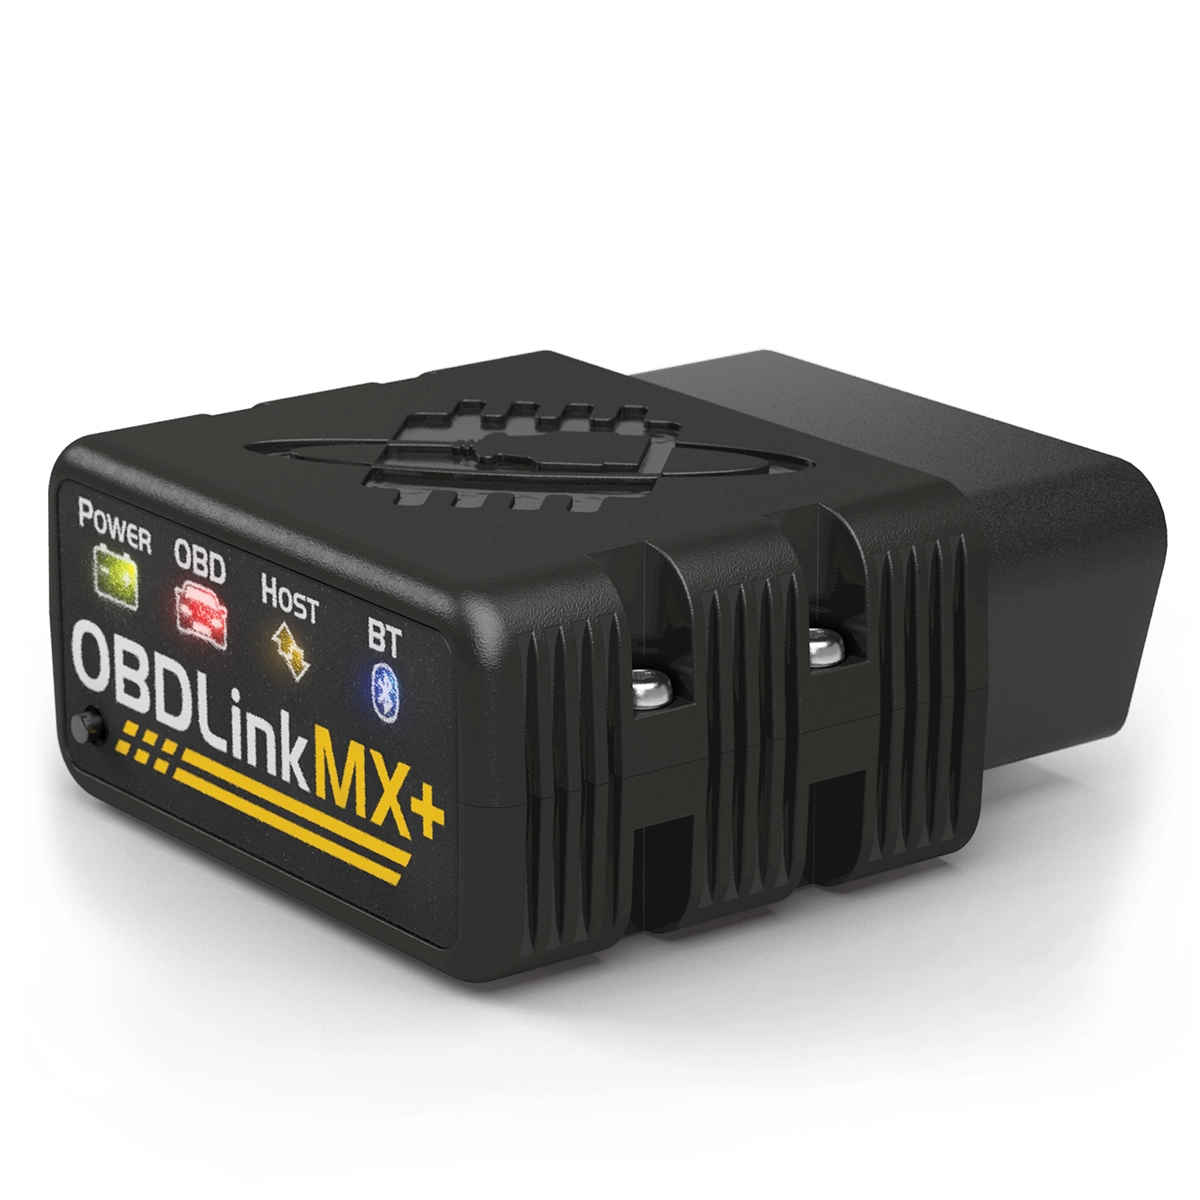 OBDLink MX+ OBD2 Bluetooth Diagnostic Scan Tool